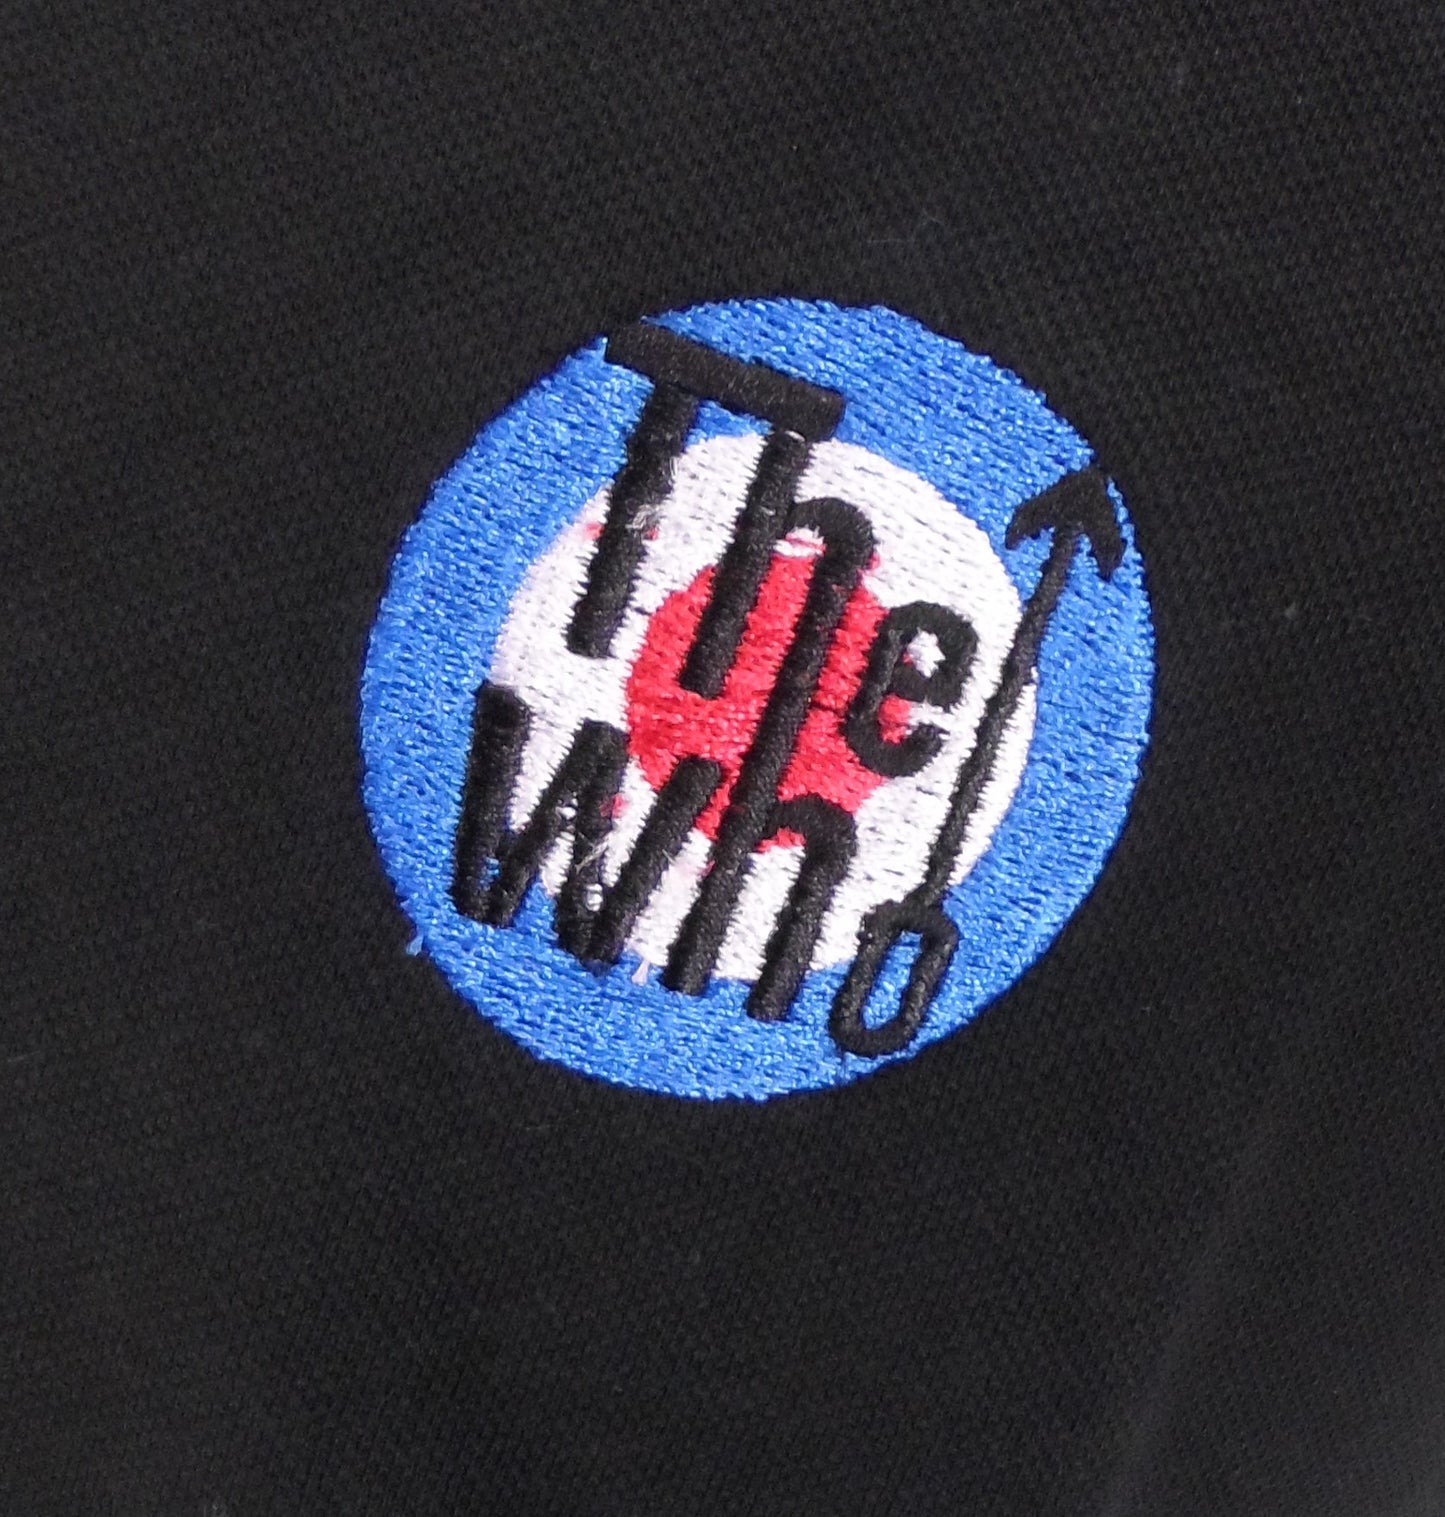 Schwarzes Herren-Poloshirt aus 100 % Baumwolle von The Who